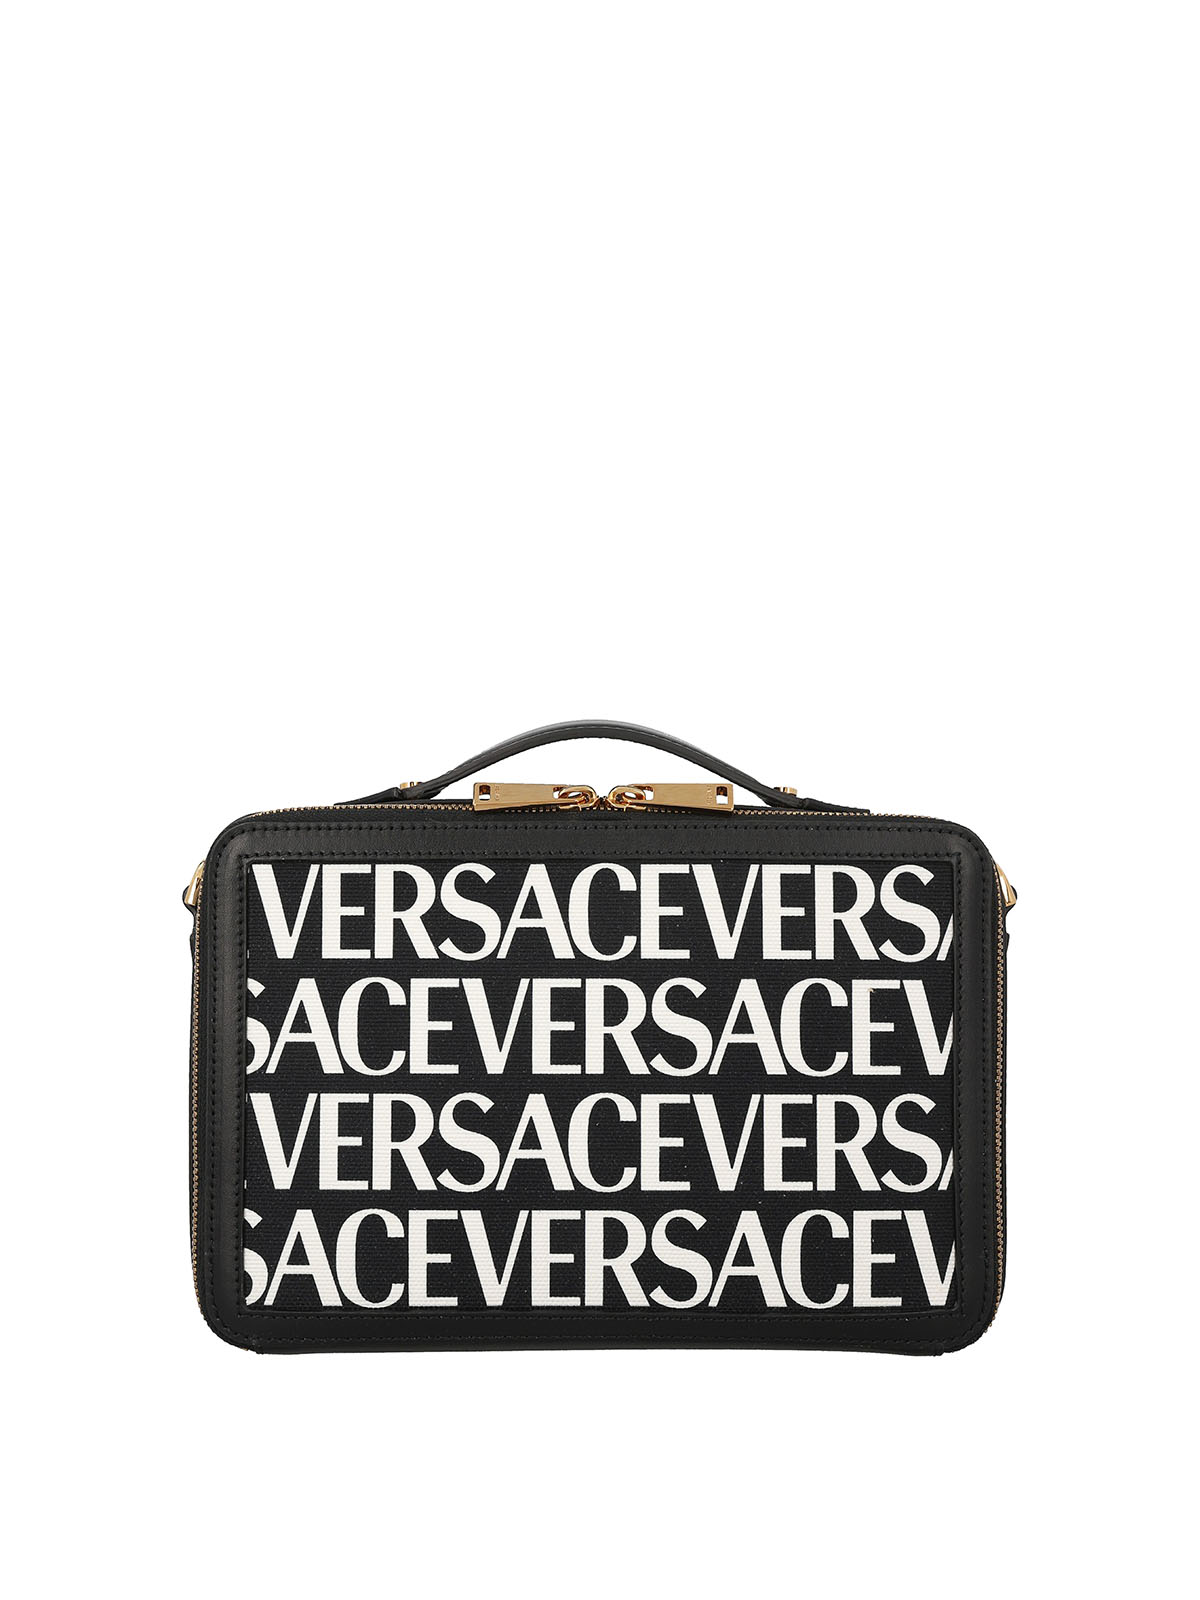 Versace La Greca Signature Tote in Black